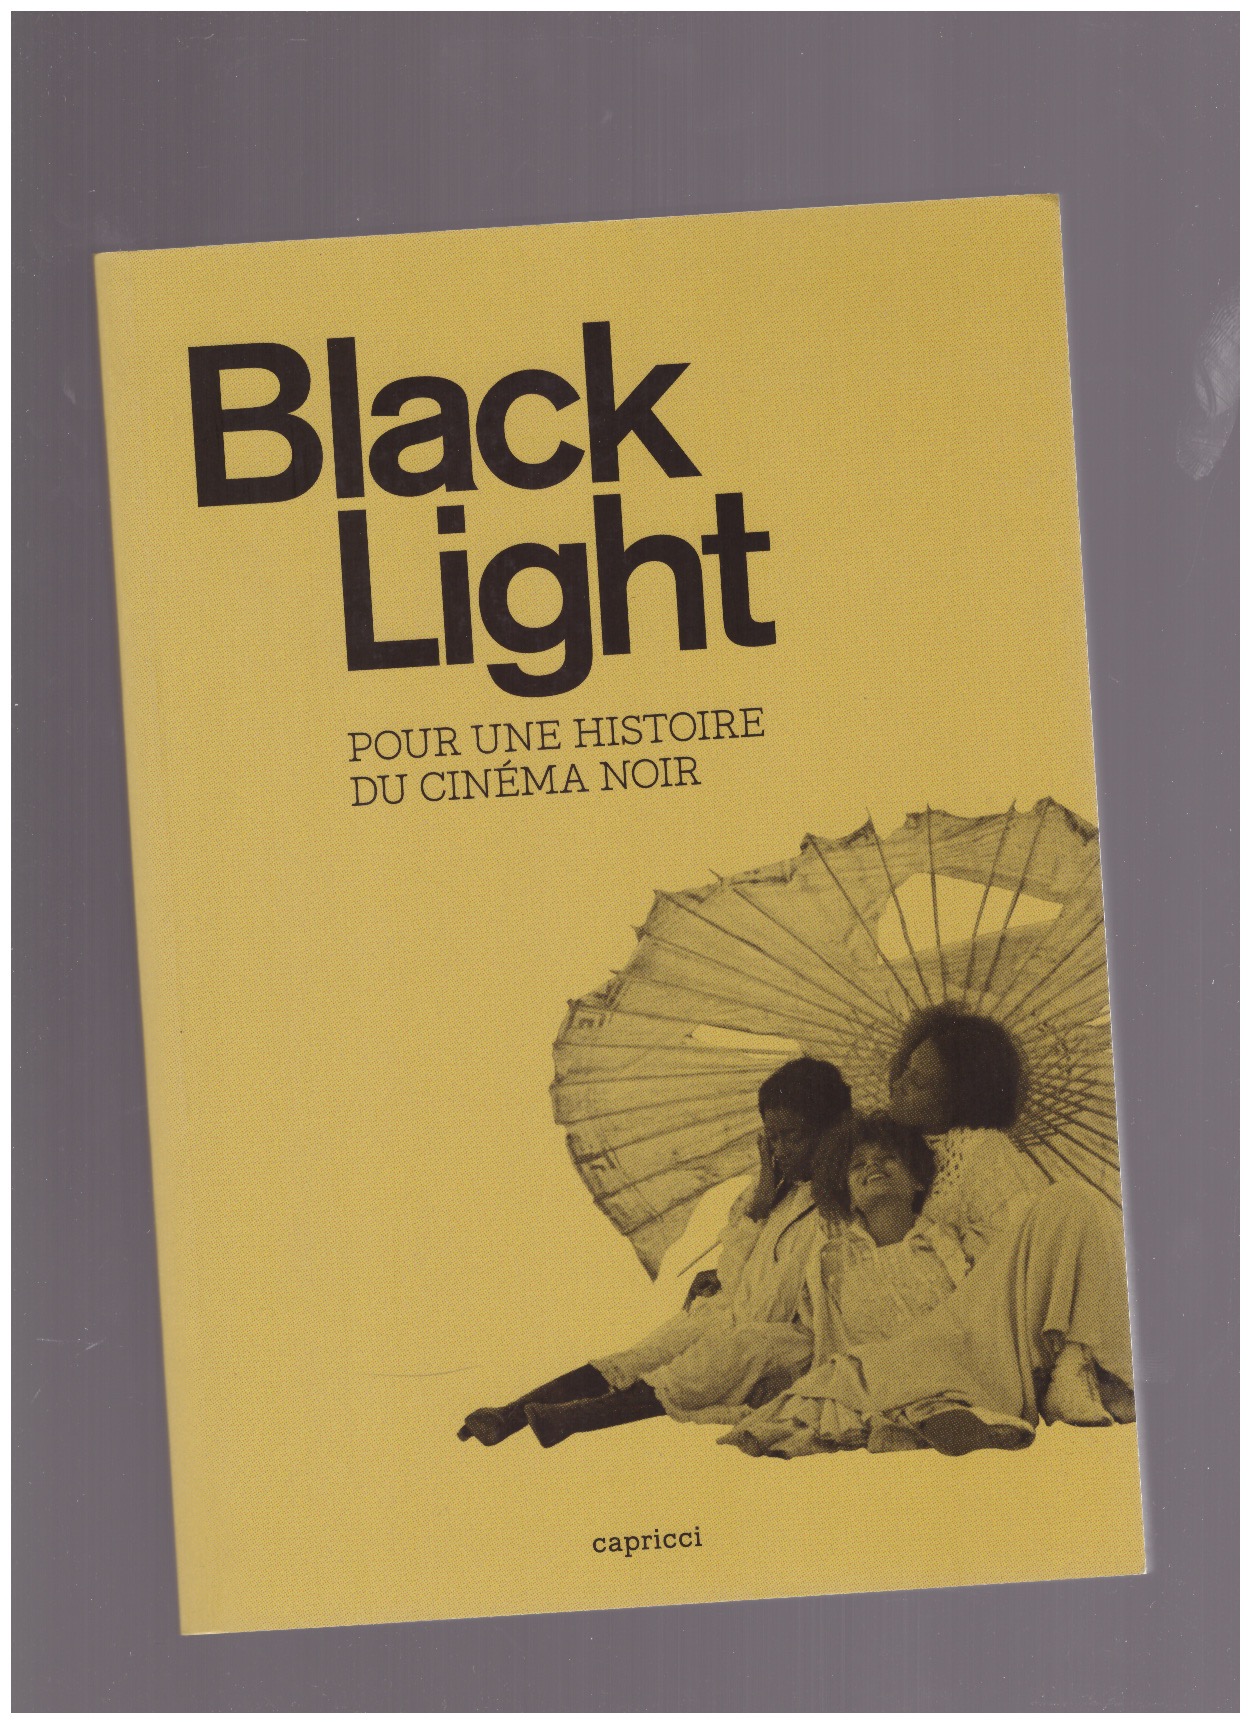 GANZO, Fernando - Black light, pour une histoire du cinéma noir